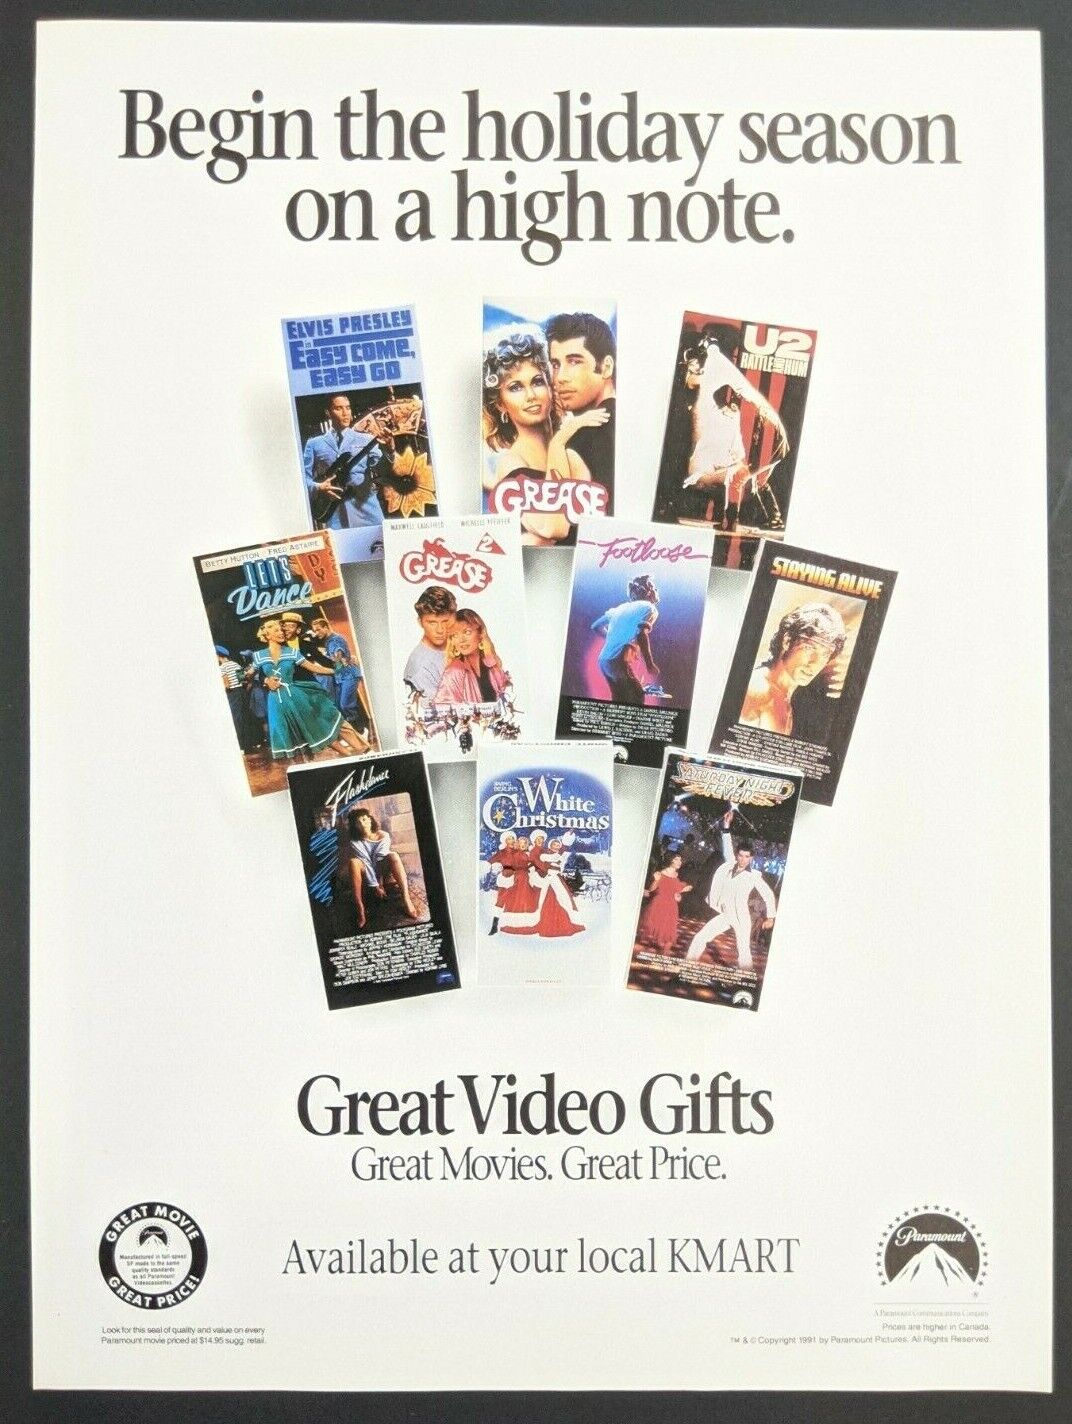 KMART VHS Video Gift Print Ad Poster Art PROMO Official Vintage Grease U2 Elvis